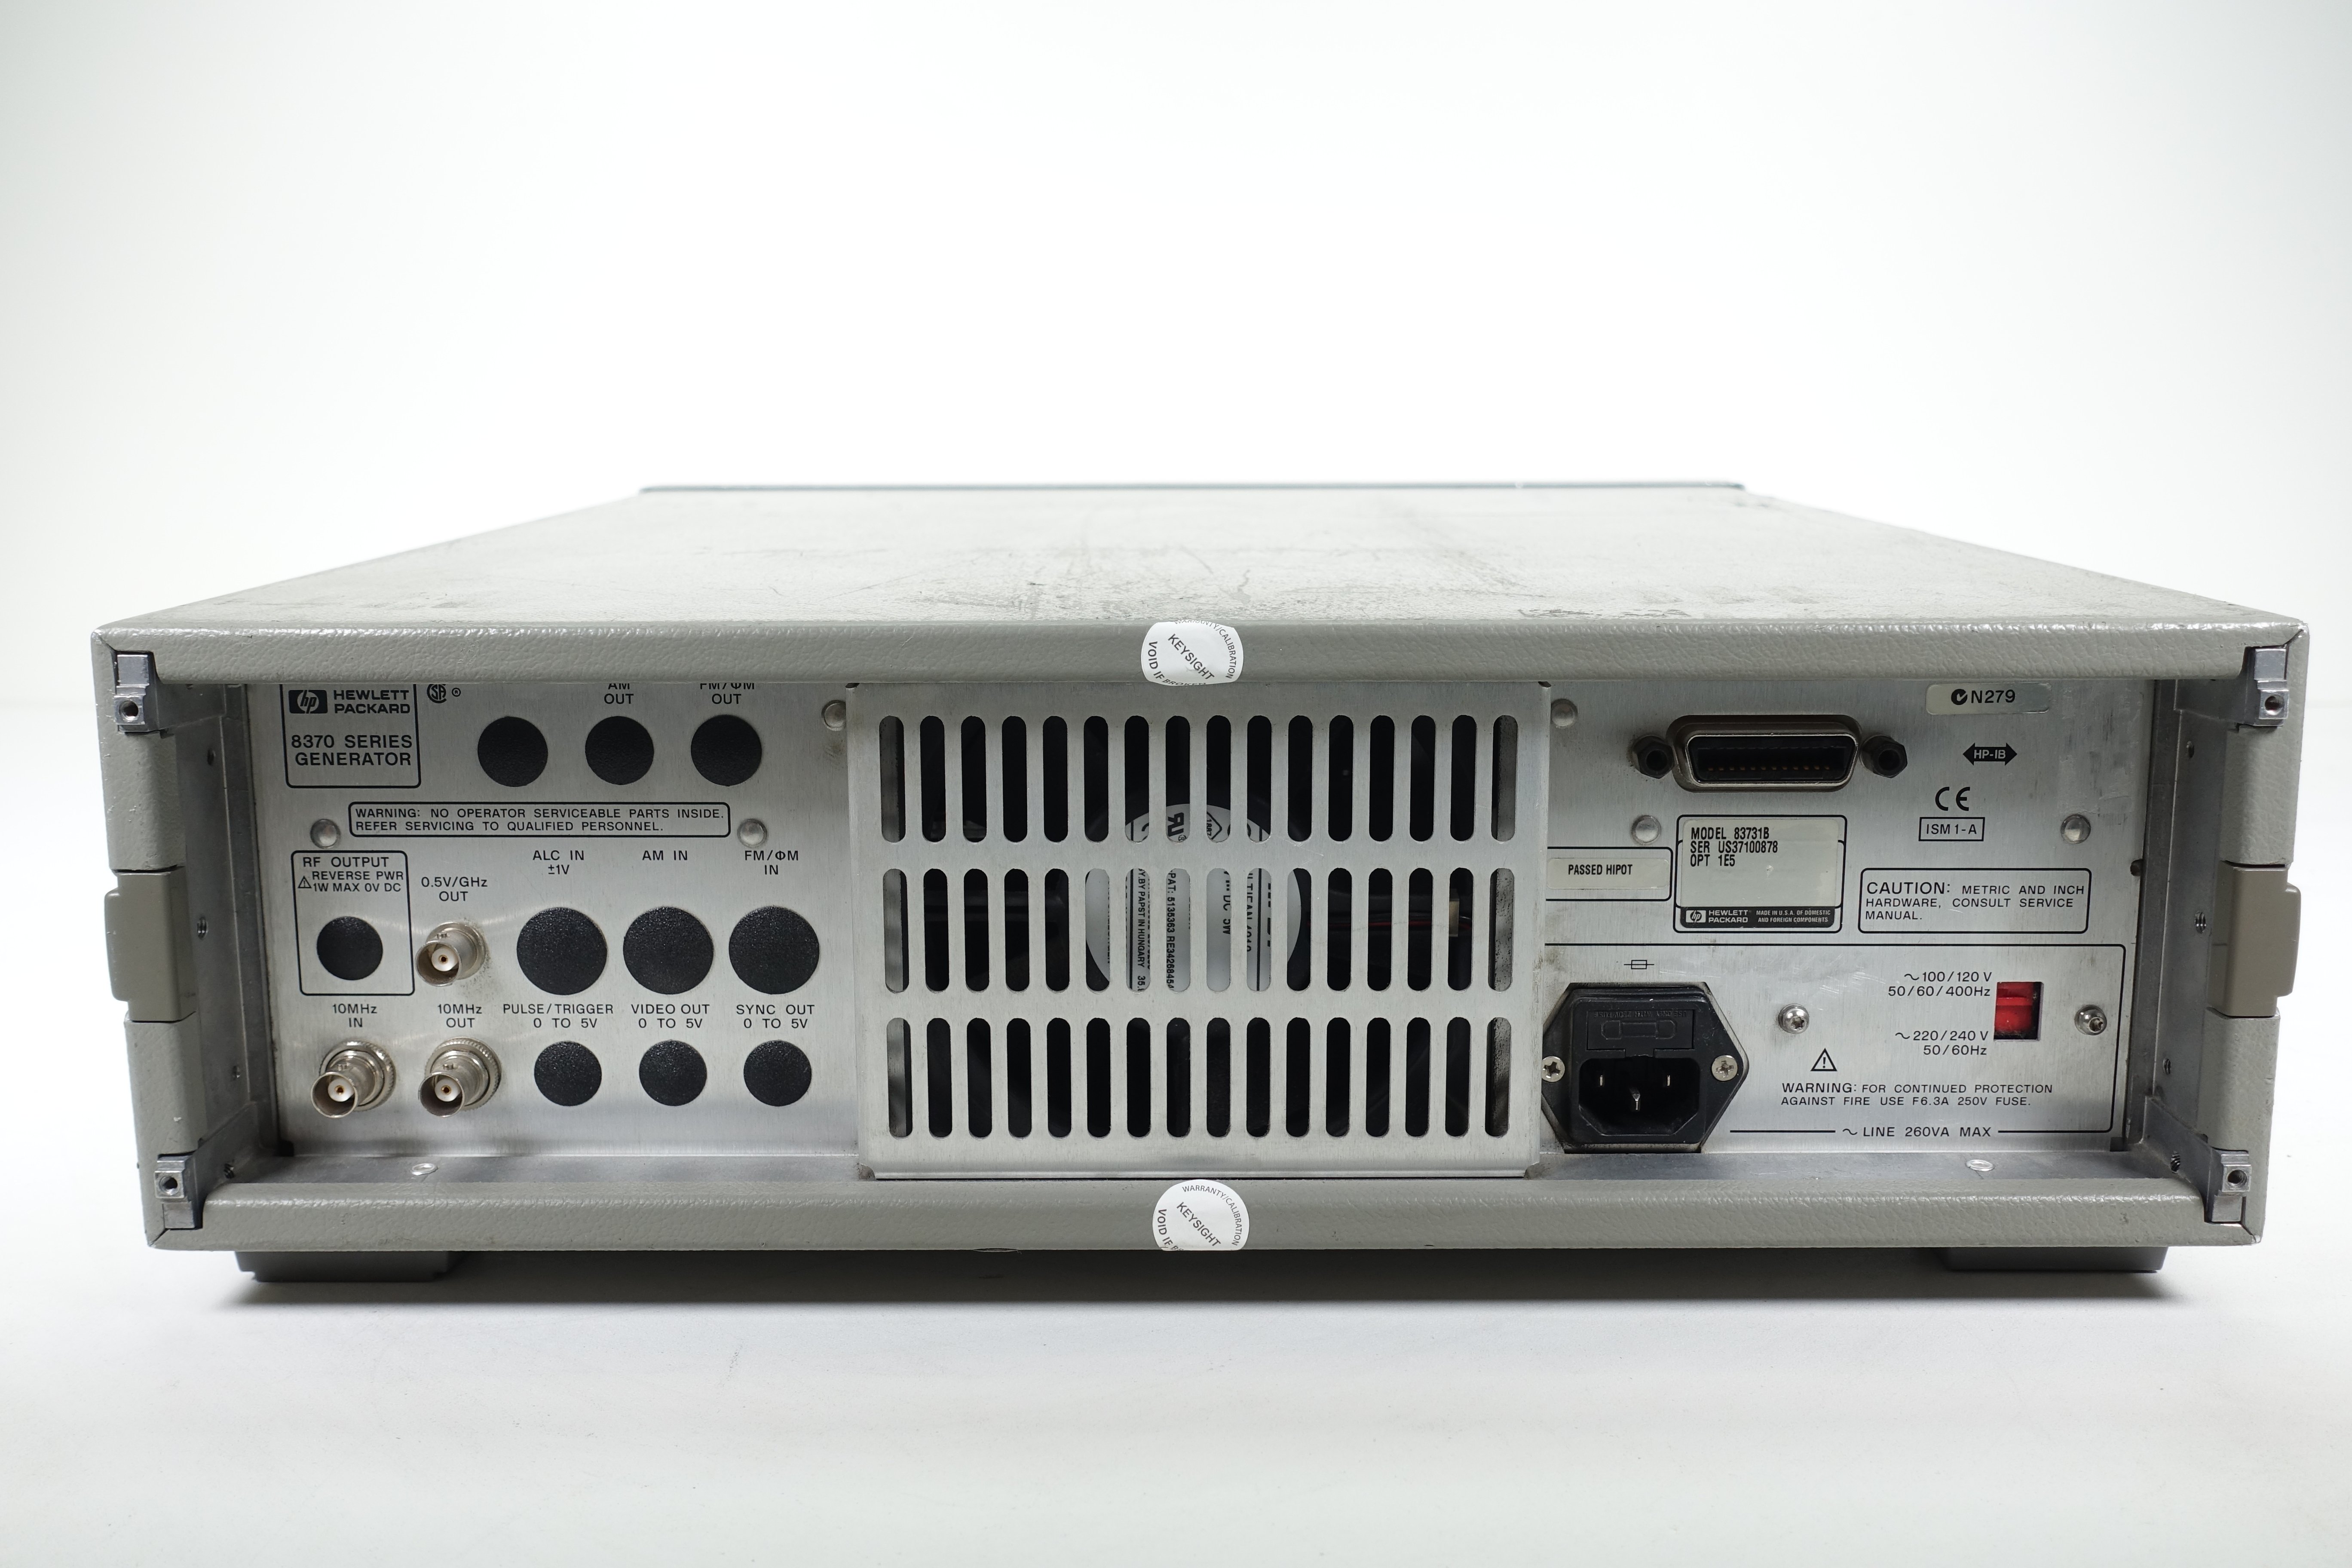 Keysight 83731B Synthesized Signal Generator / 1 GHz to 20 GHz